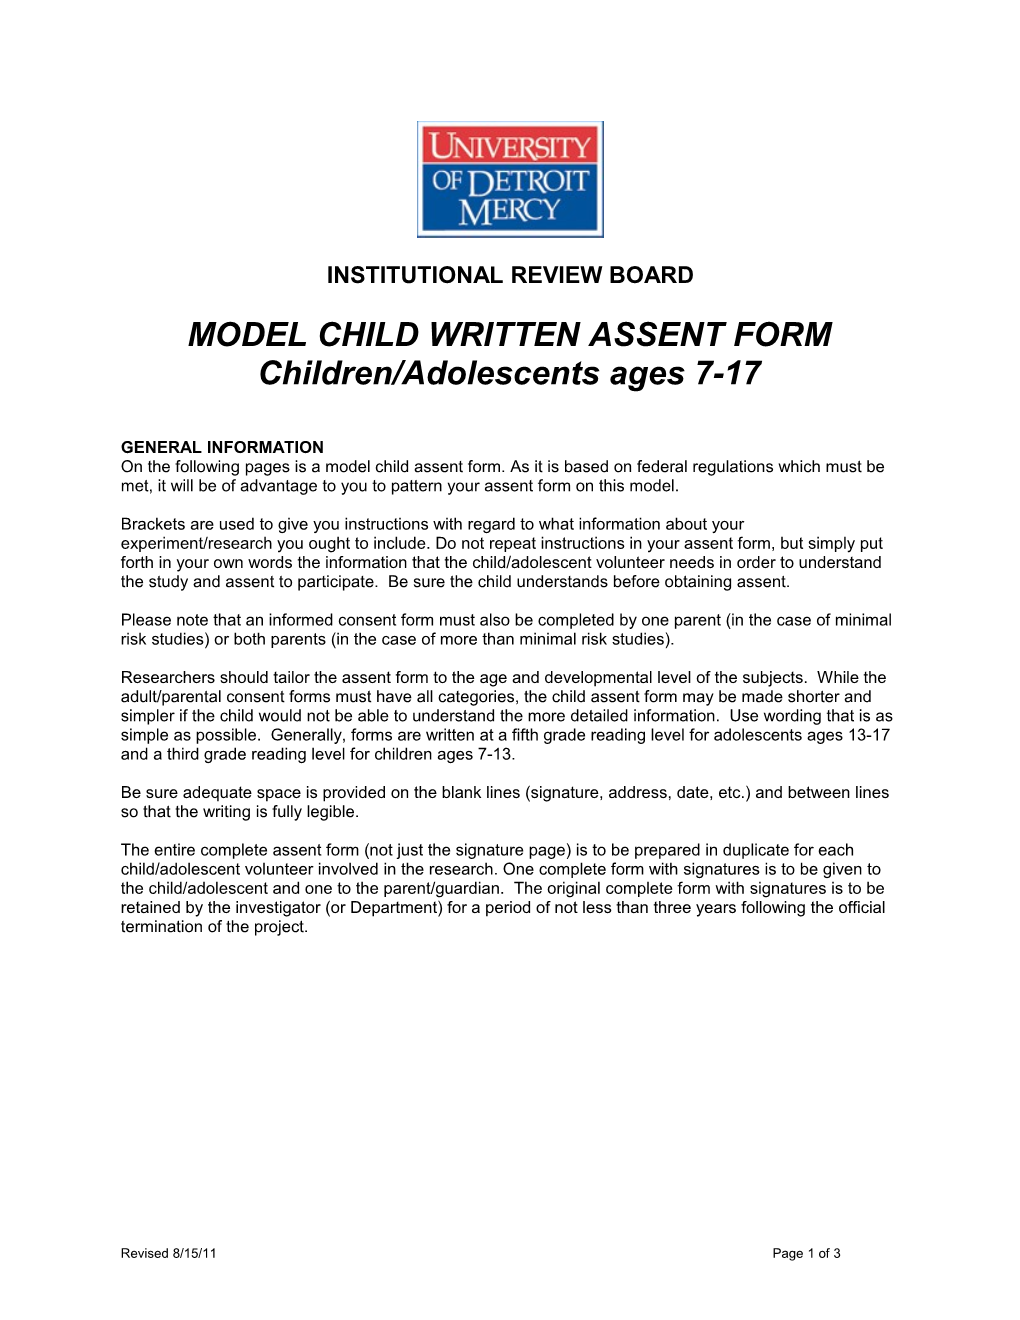 Modelchild Written Assent Form